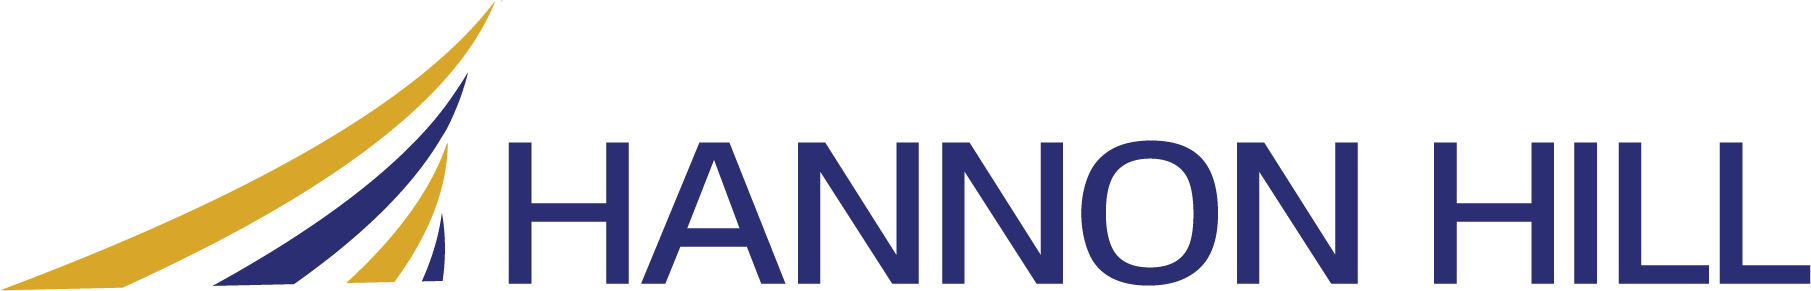 Hannon Hill Logo Color Version